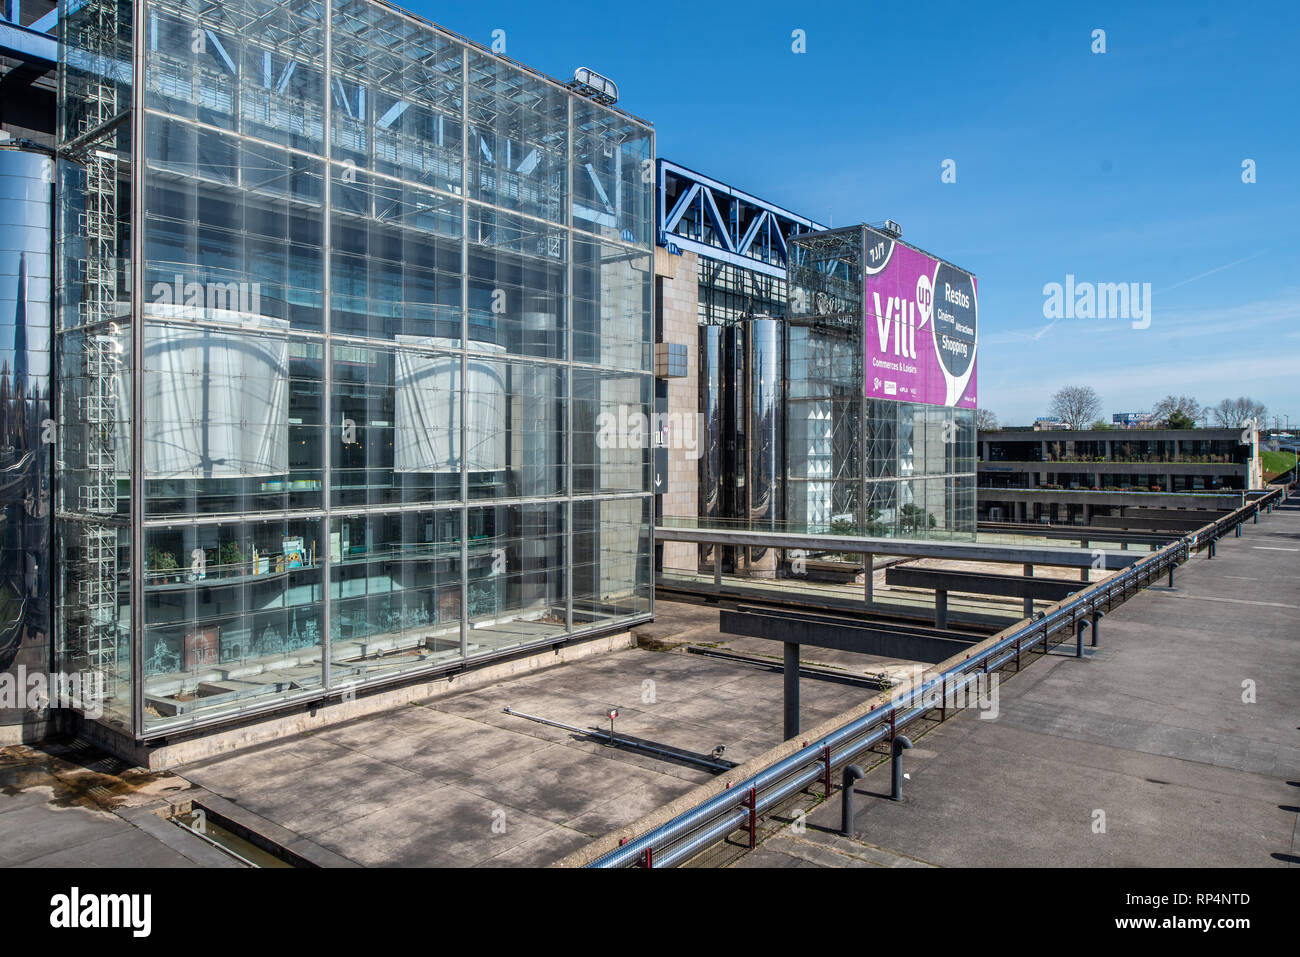 France, Paris - 6 Avril 2018 : vue extérieure de la Cité des Sciences et de l'Industrie - le plus grand musée des sciences en Europe Banque D'Images